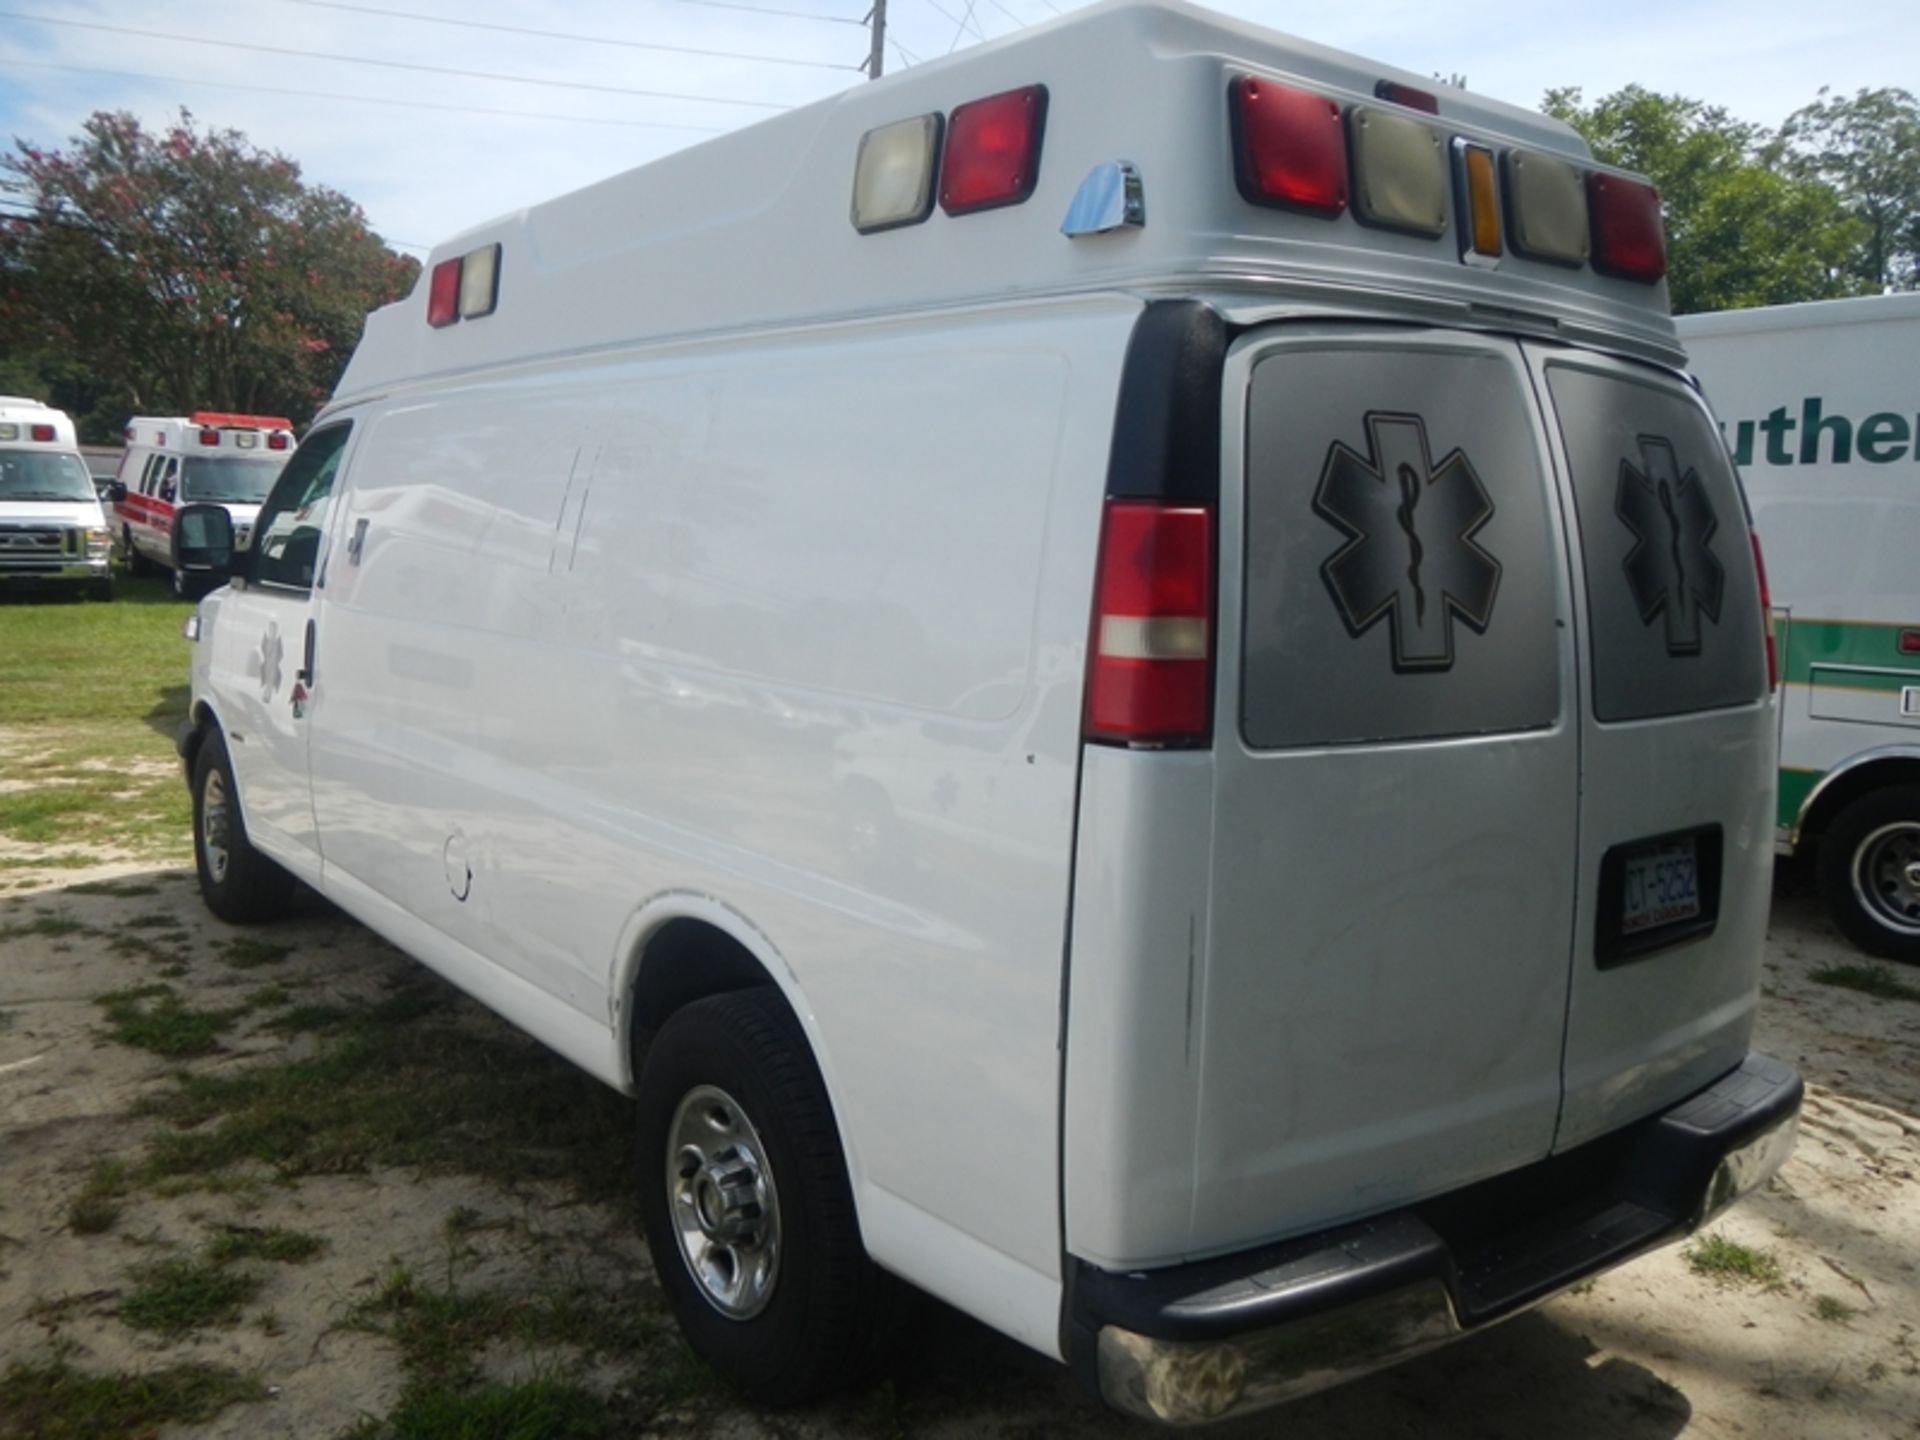 2009 CHEVROLET G-3500 Type II Ambulance 206,920 miles - 1GBHG396491168372 - Image 4 of 6